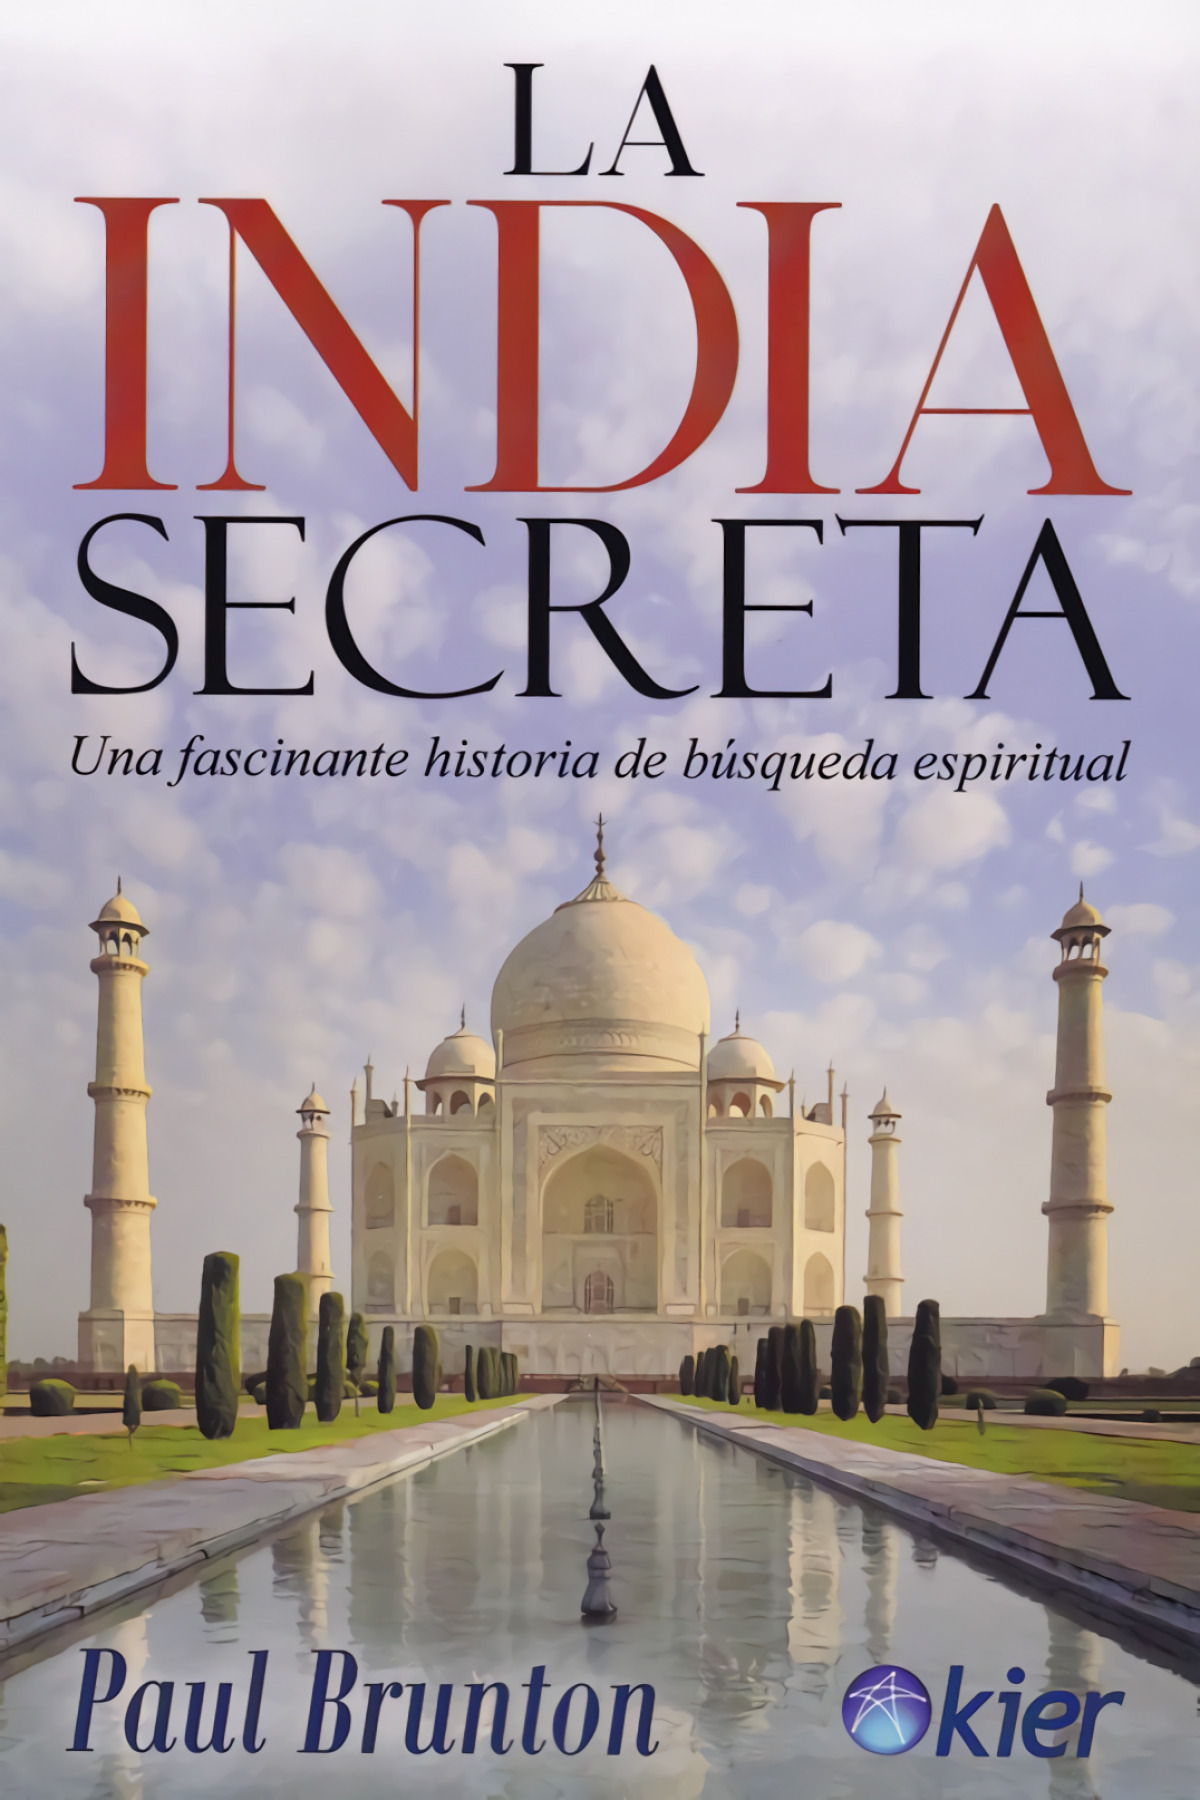 La India secreta - Brunton, Paul